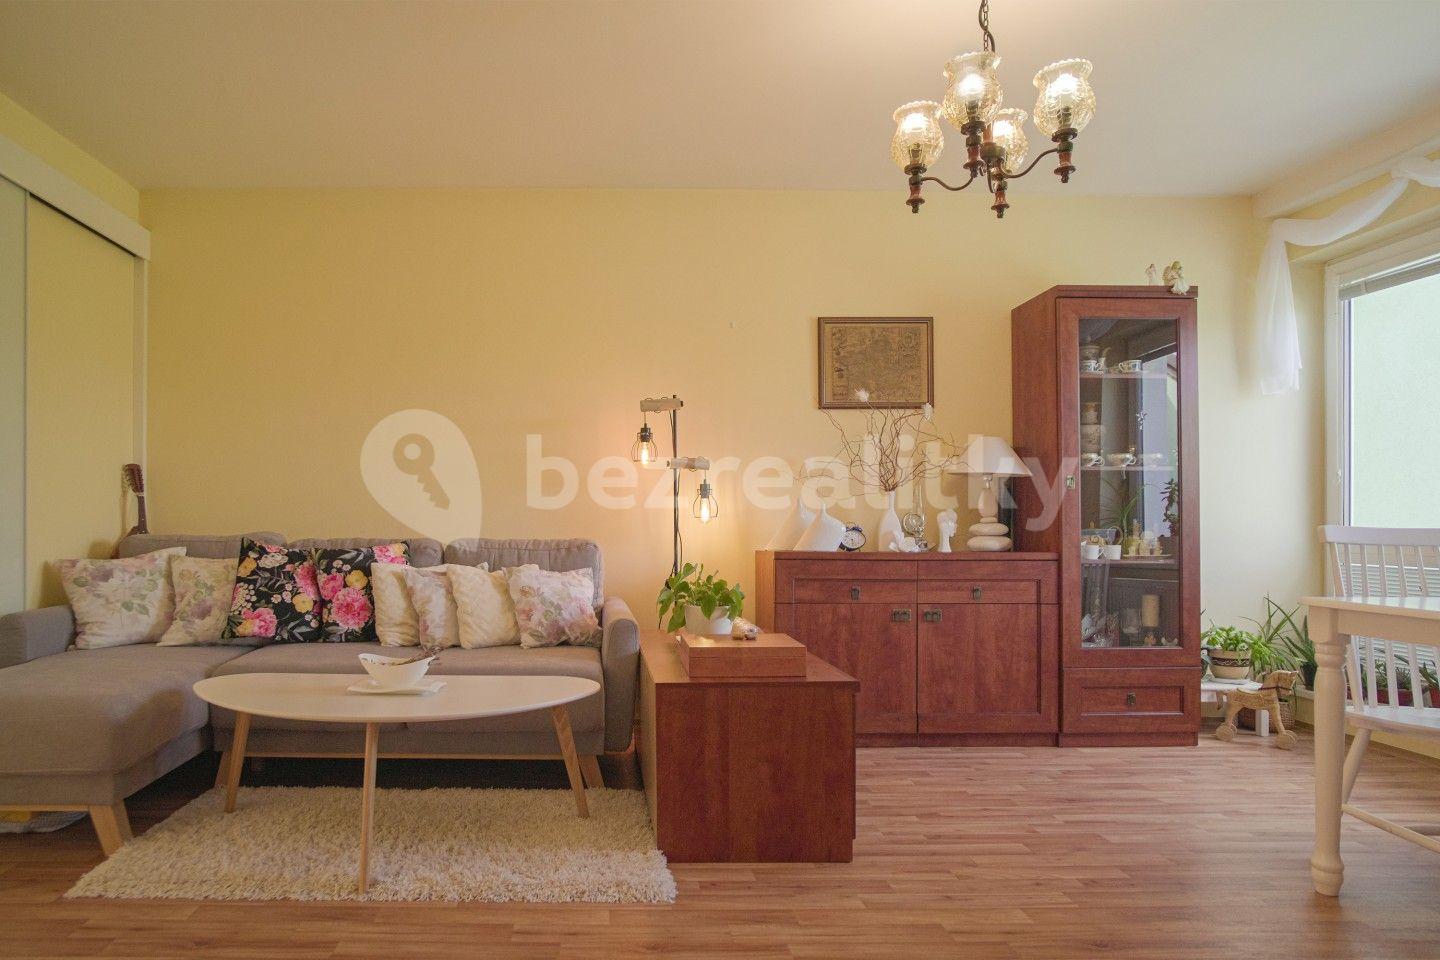 1 bedroom with open-plan kitchen flat for sale, 58 m², Franze Kafky, Mariánské Lázně, Karlovarský Region